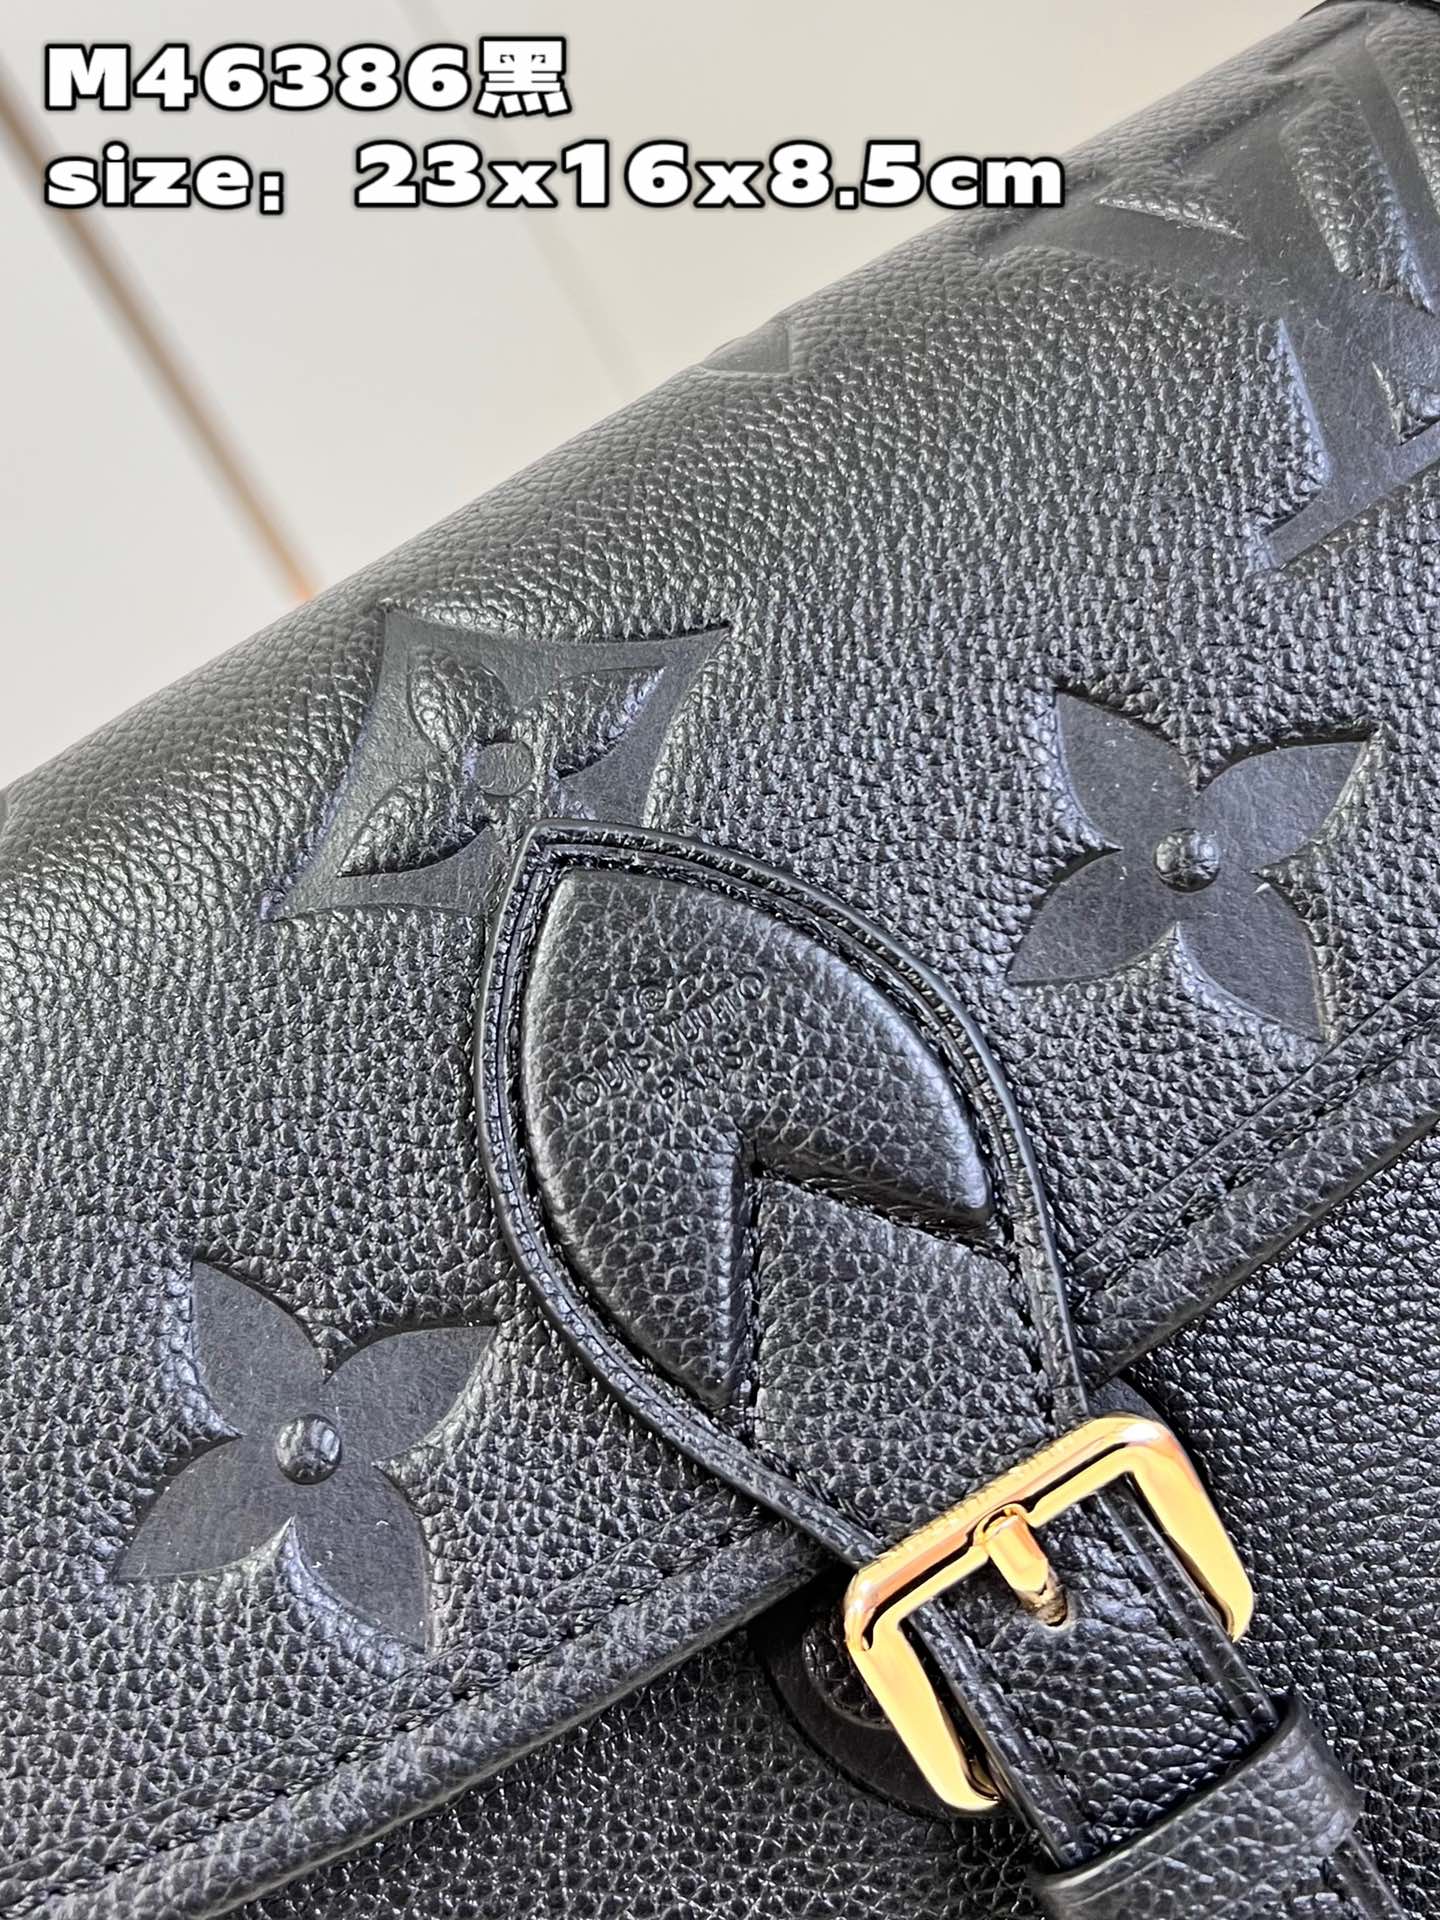 顶级原单M46386黑本款Diane手袋取材路易威登经典MonogramEmpreinte压纹皮革将品牌